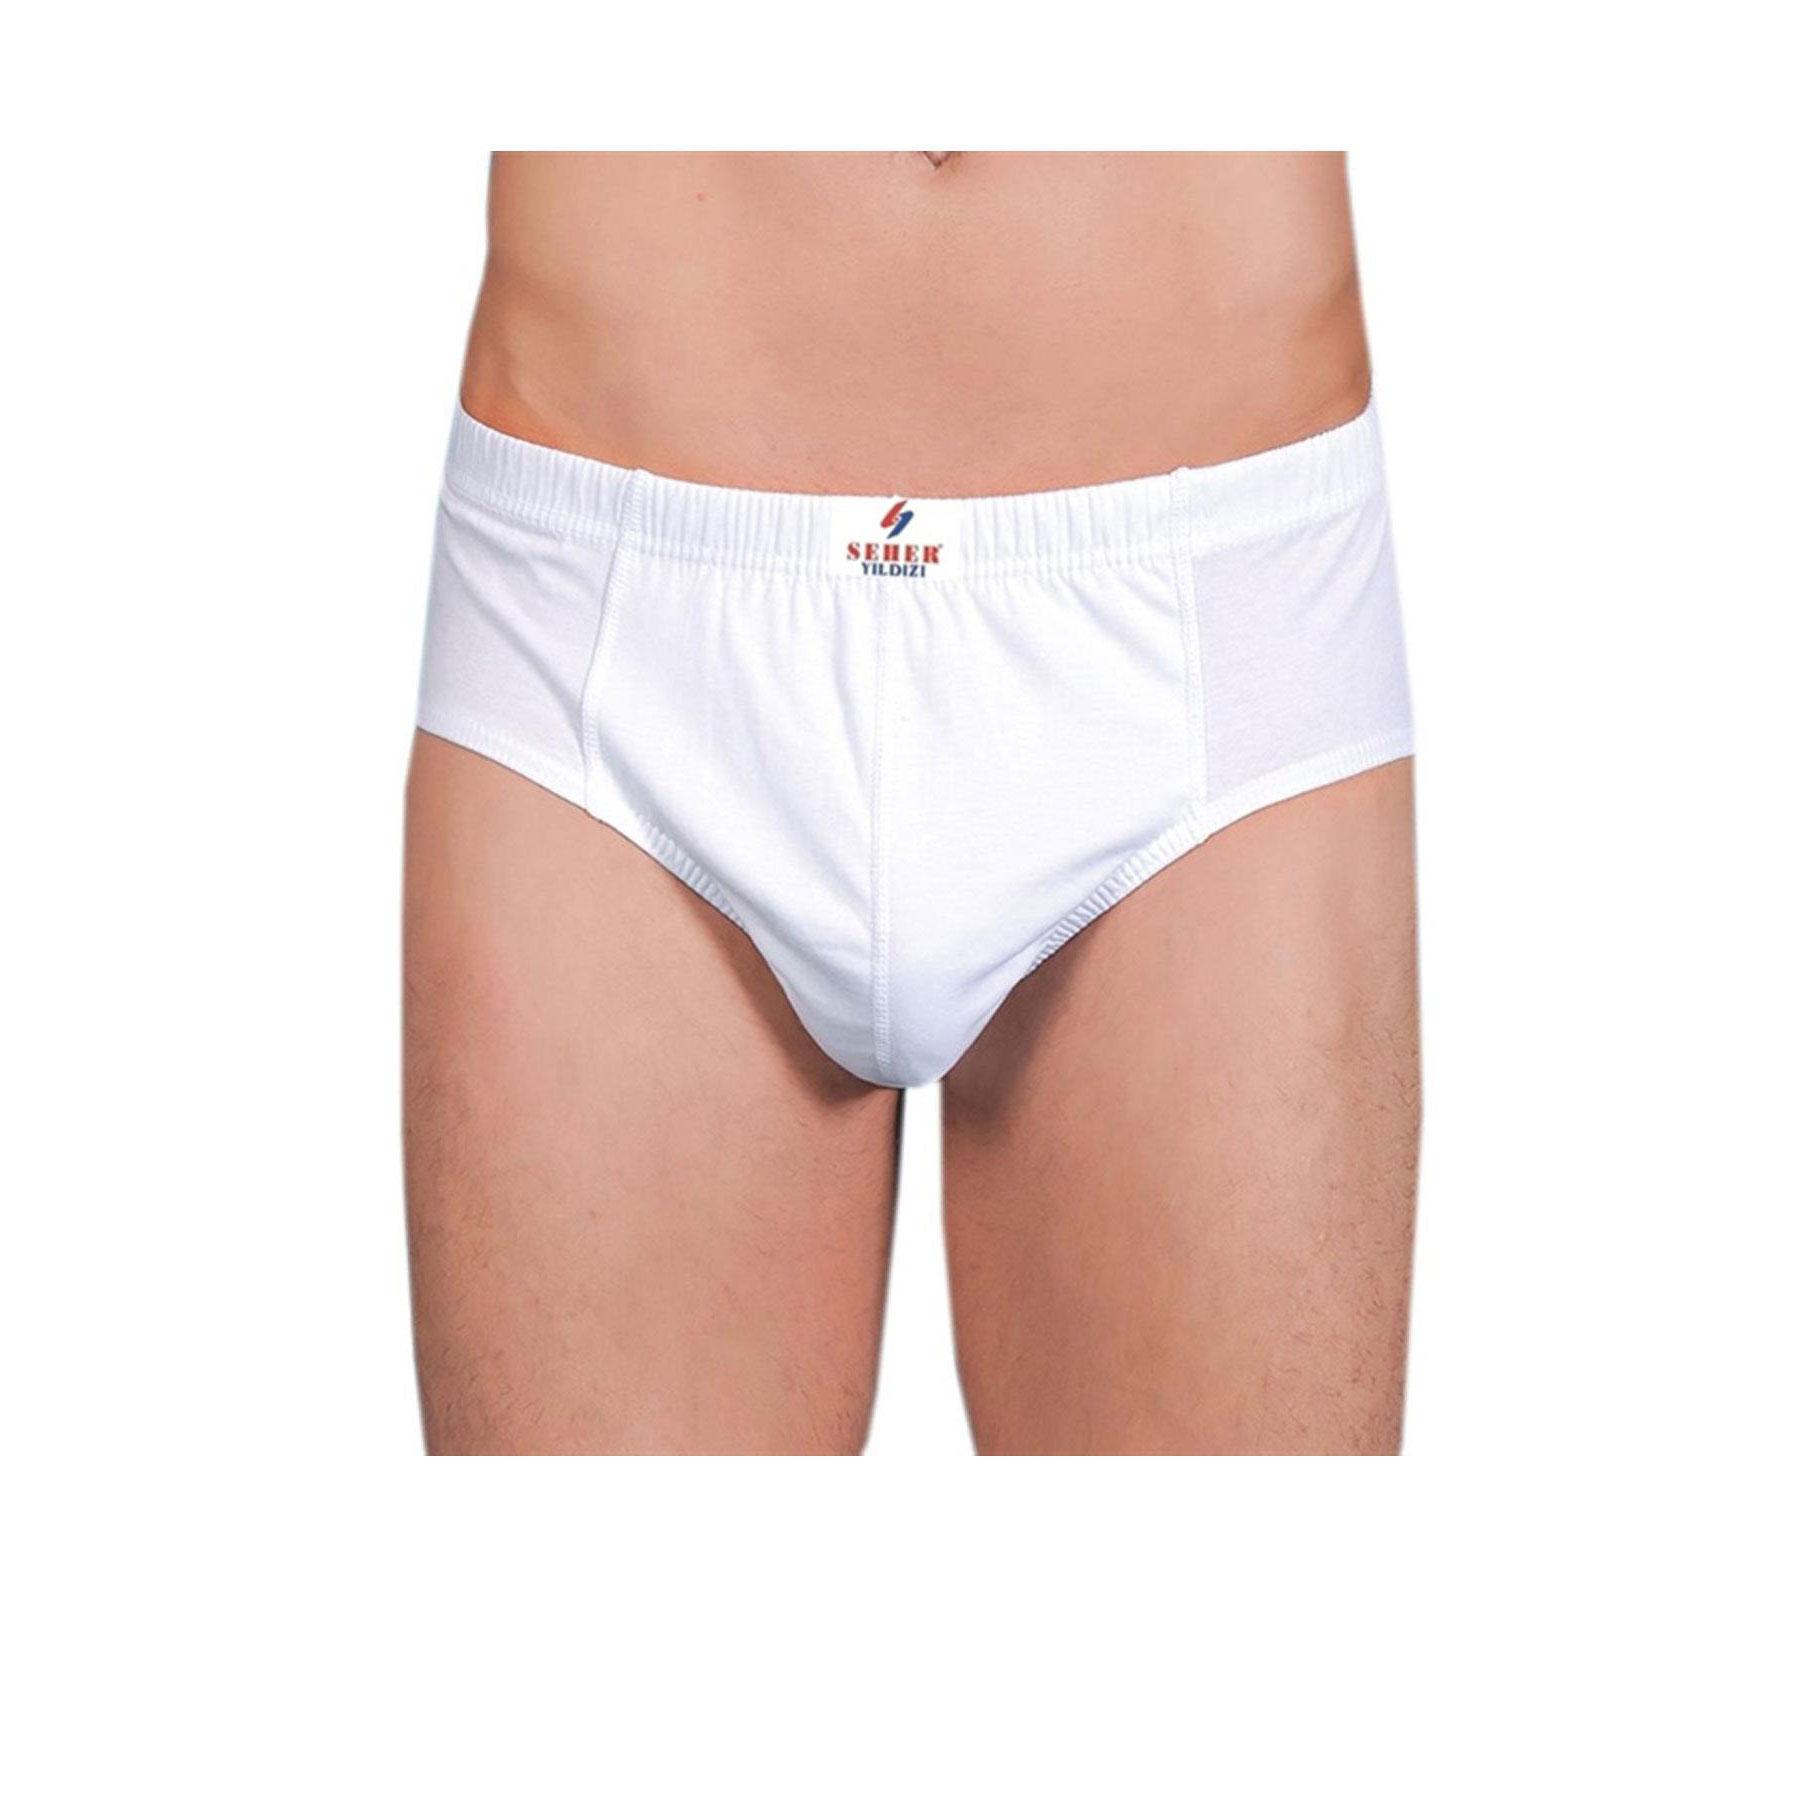 Hepsine Rakip Seher Yıldız Underwear Men's Cotton Slip Briefs 6 LI Pack